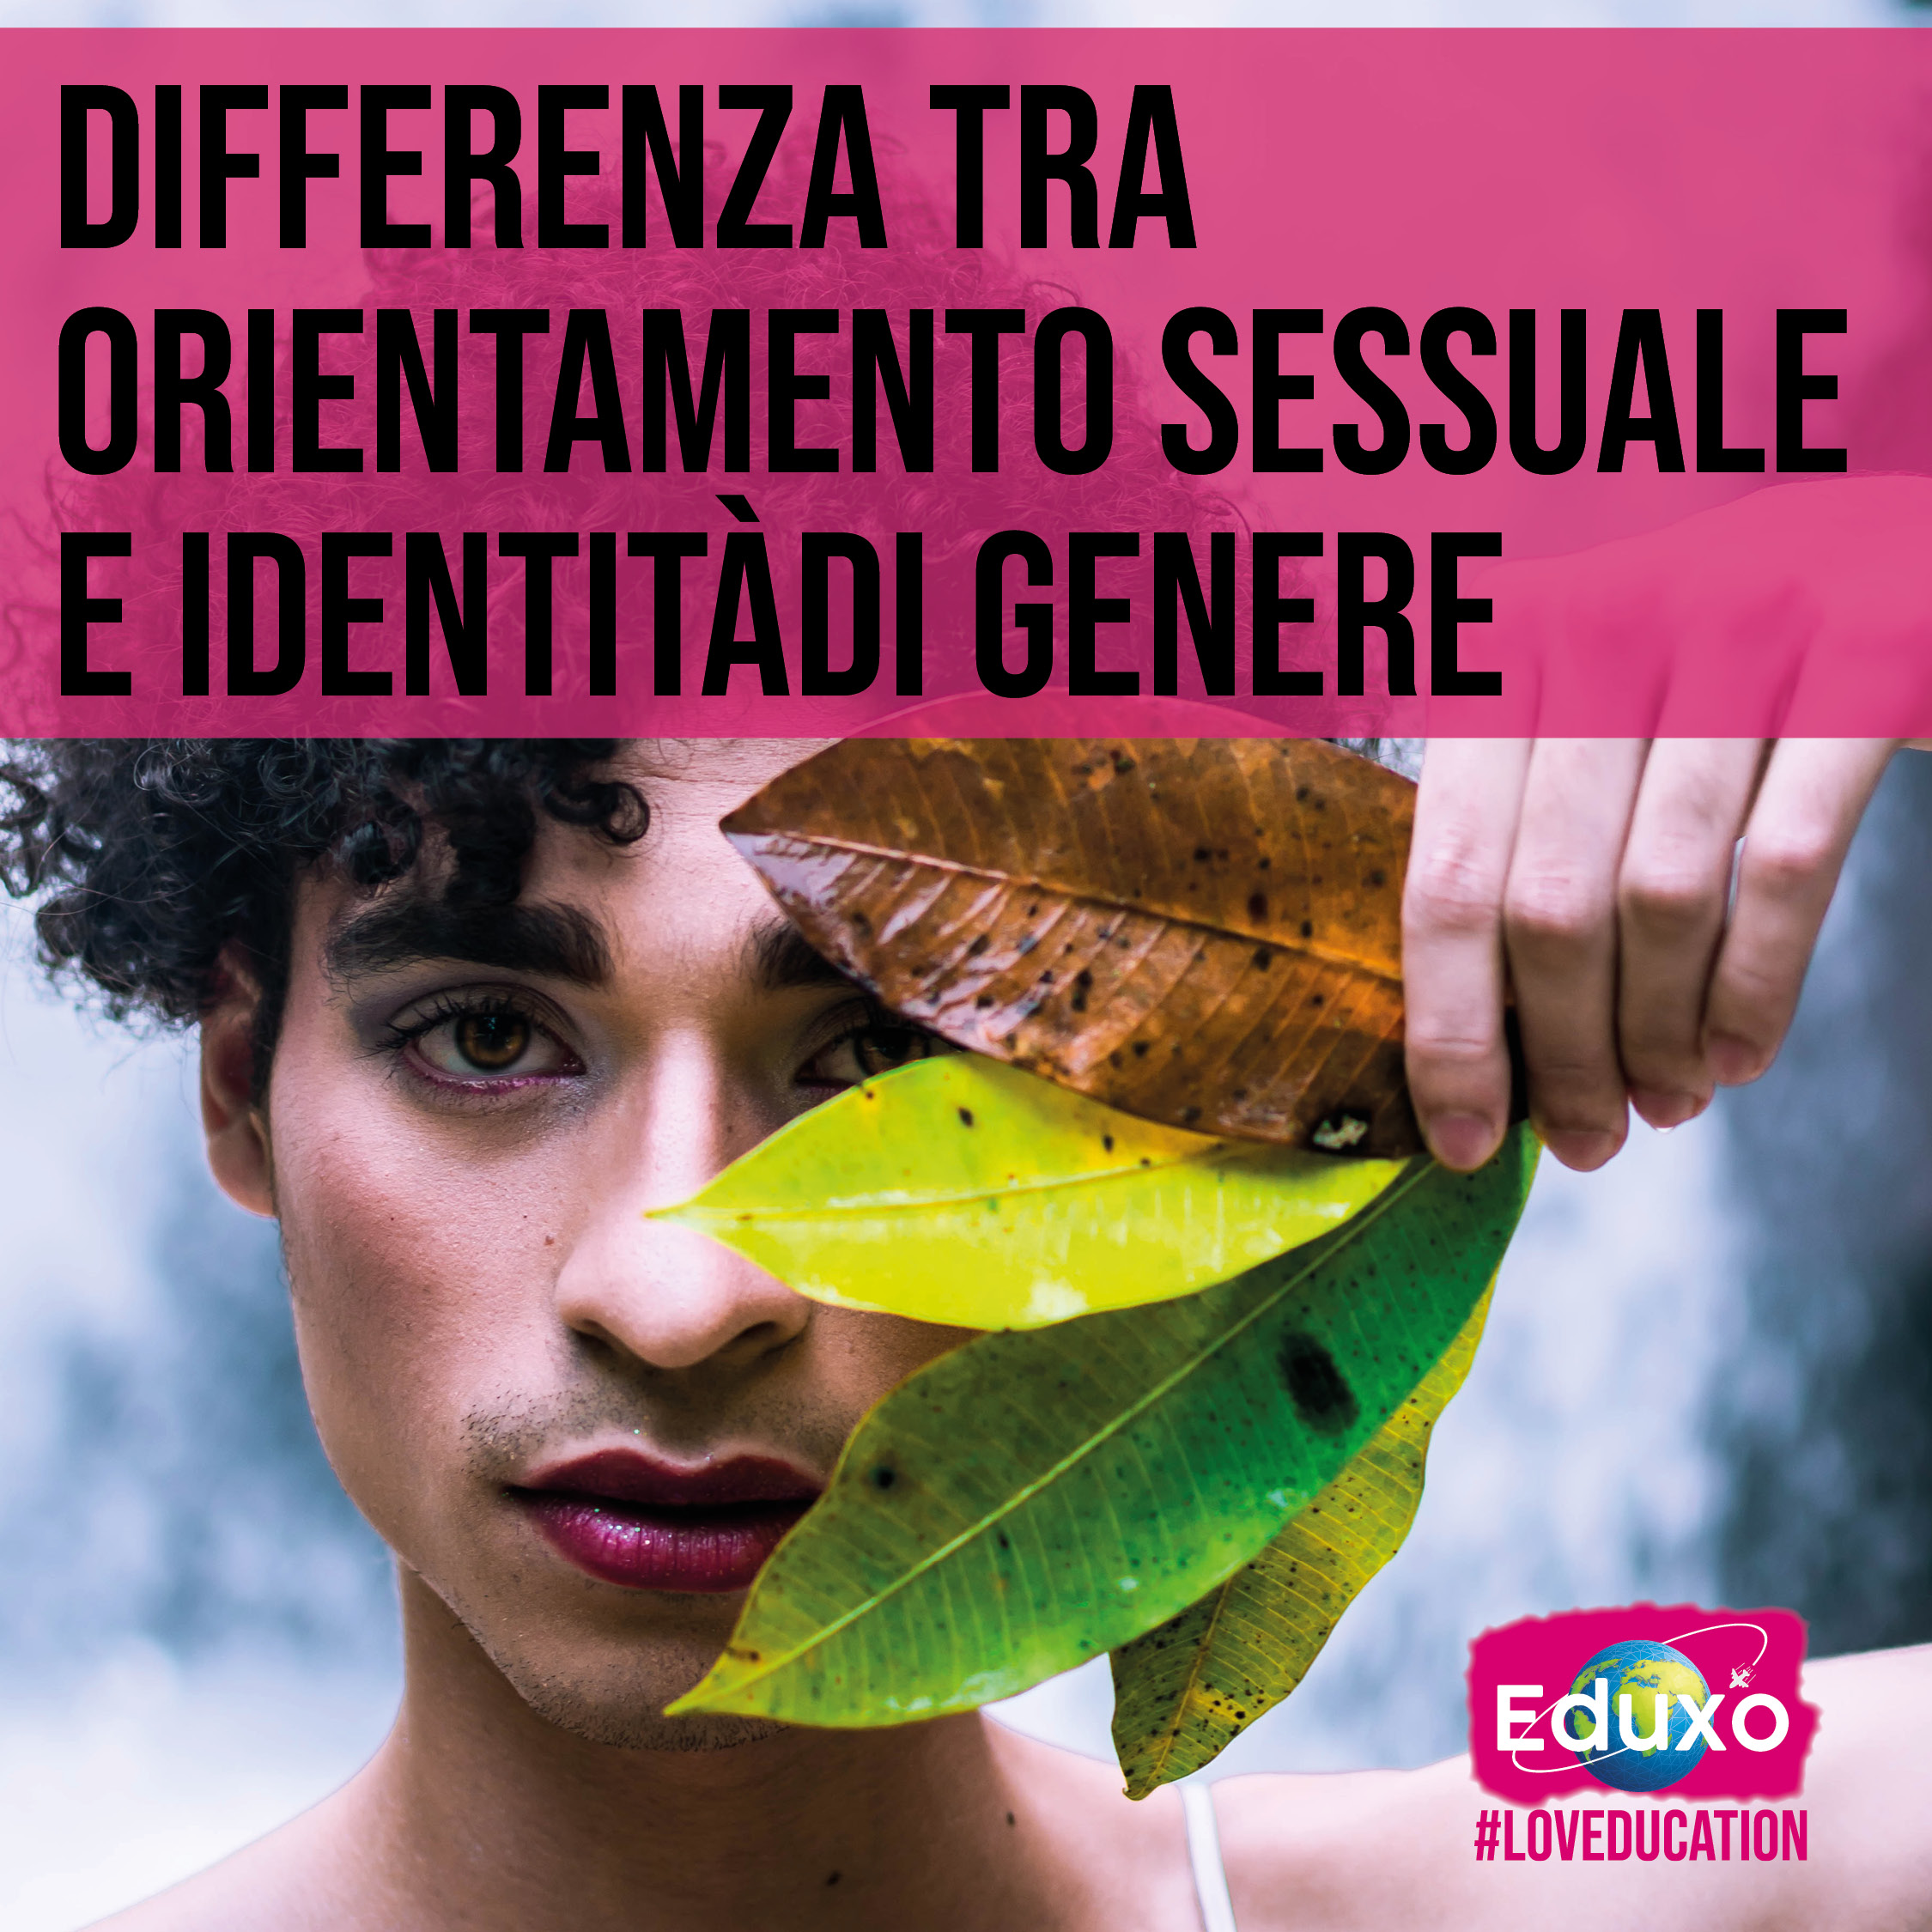 Al momento stai visualizzando Qual è la differenza tra orientamento sessuale e identità di genere?